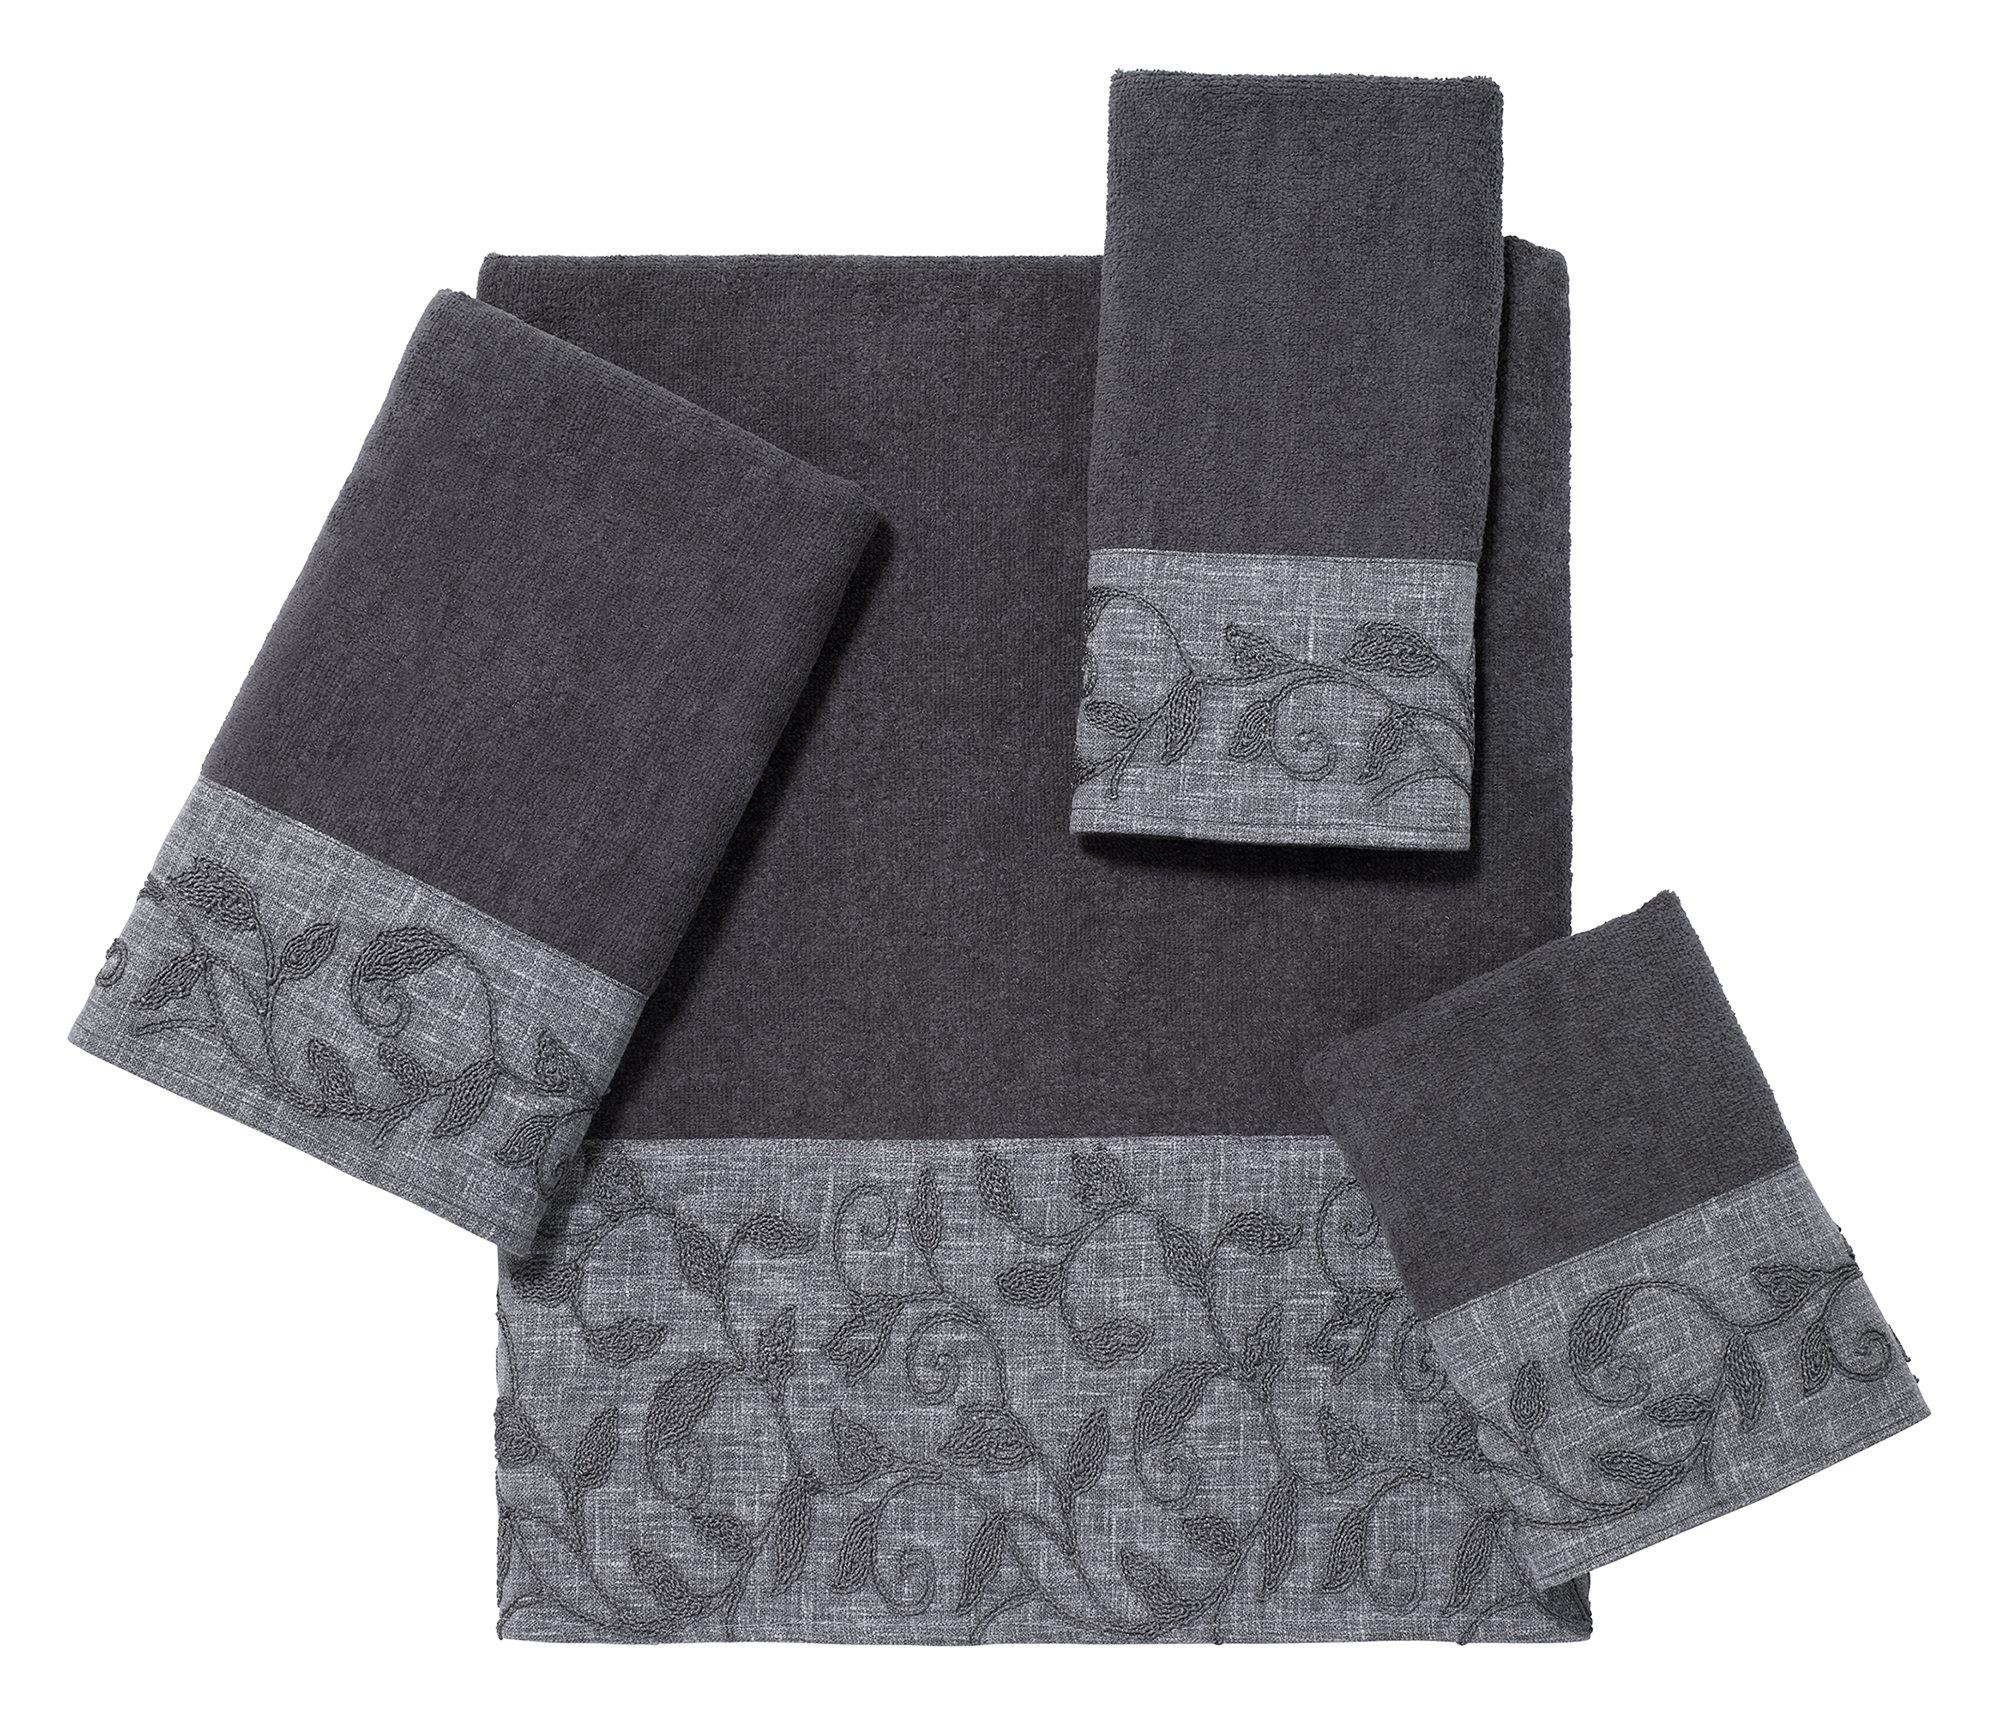 Avanti Linneto Cord Towel Collection